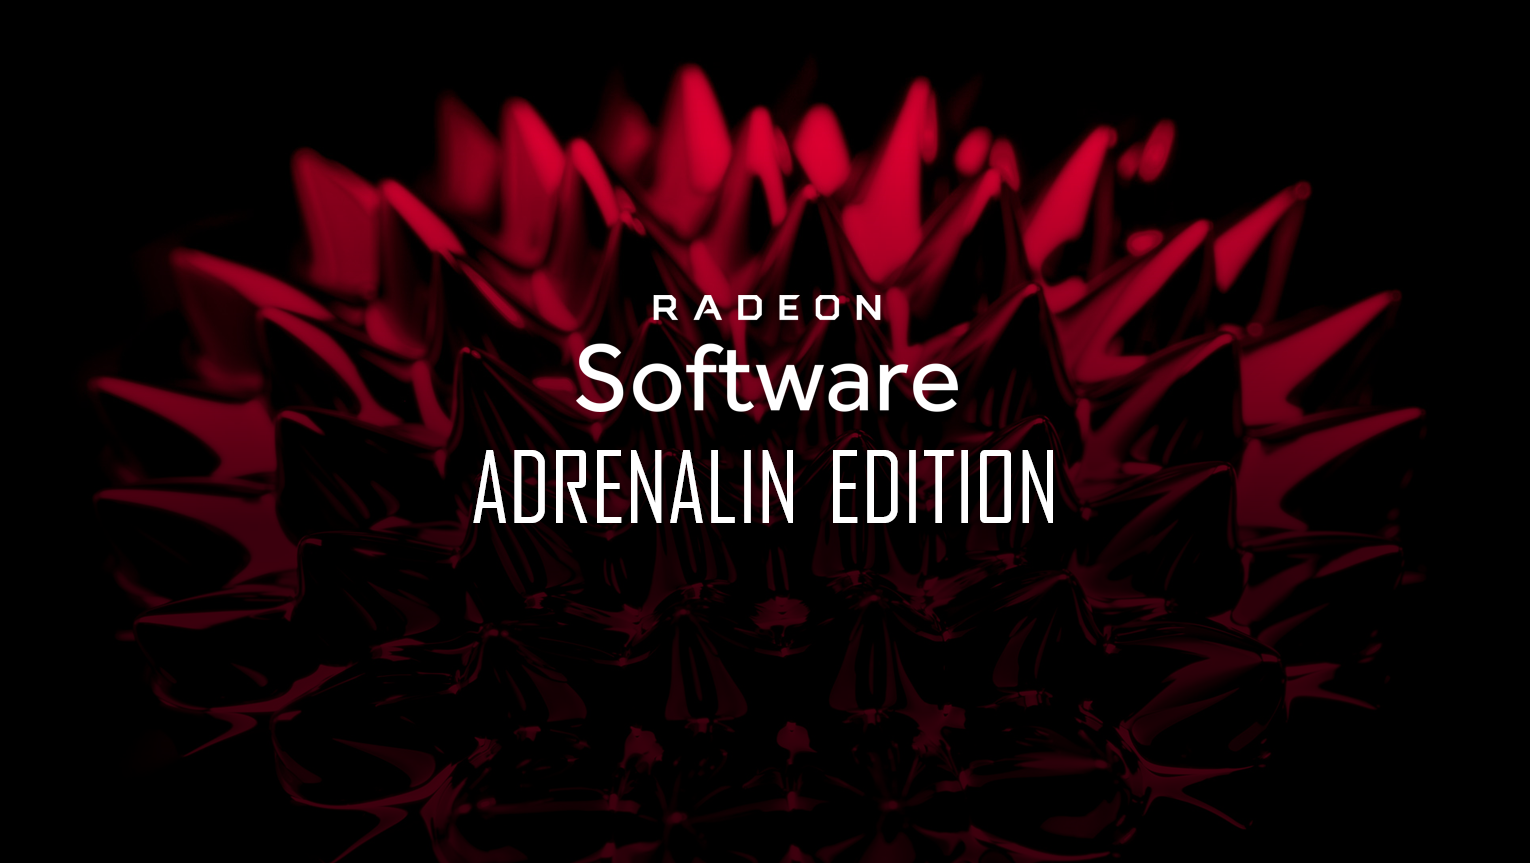 Immagine pubblicata in relazione al seguente contenuto: AMD Radeon Software Adrenalin 2019 Edition 19.8.2 - Control & Man of Medan Ready | Nome immagine: news29926_Radeon-Software-Adrenalin-2019-Edition_1.png